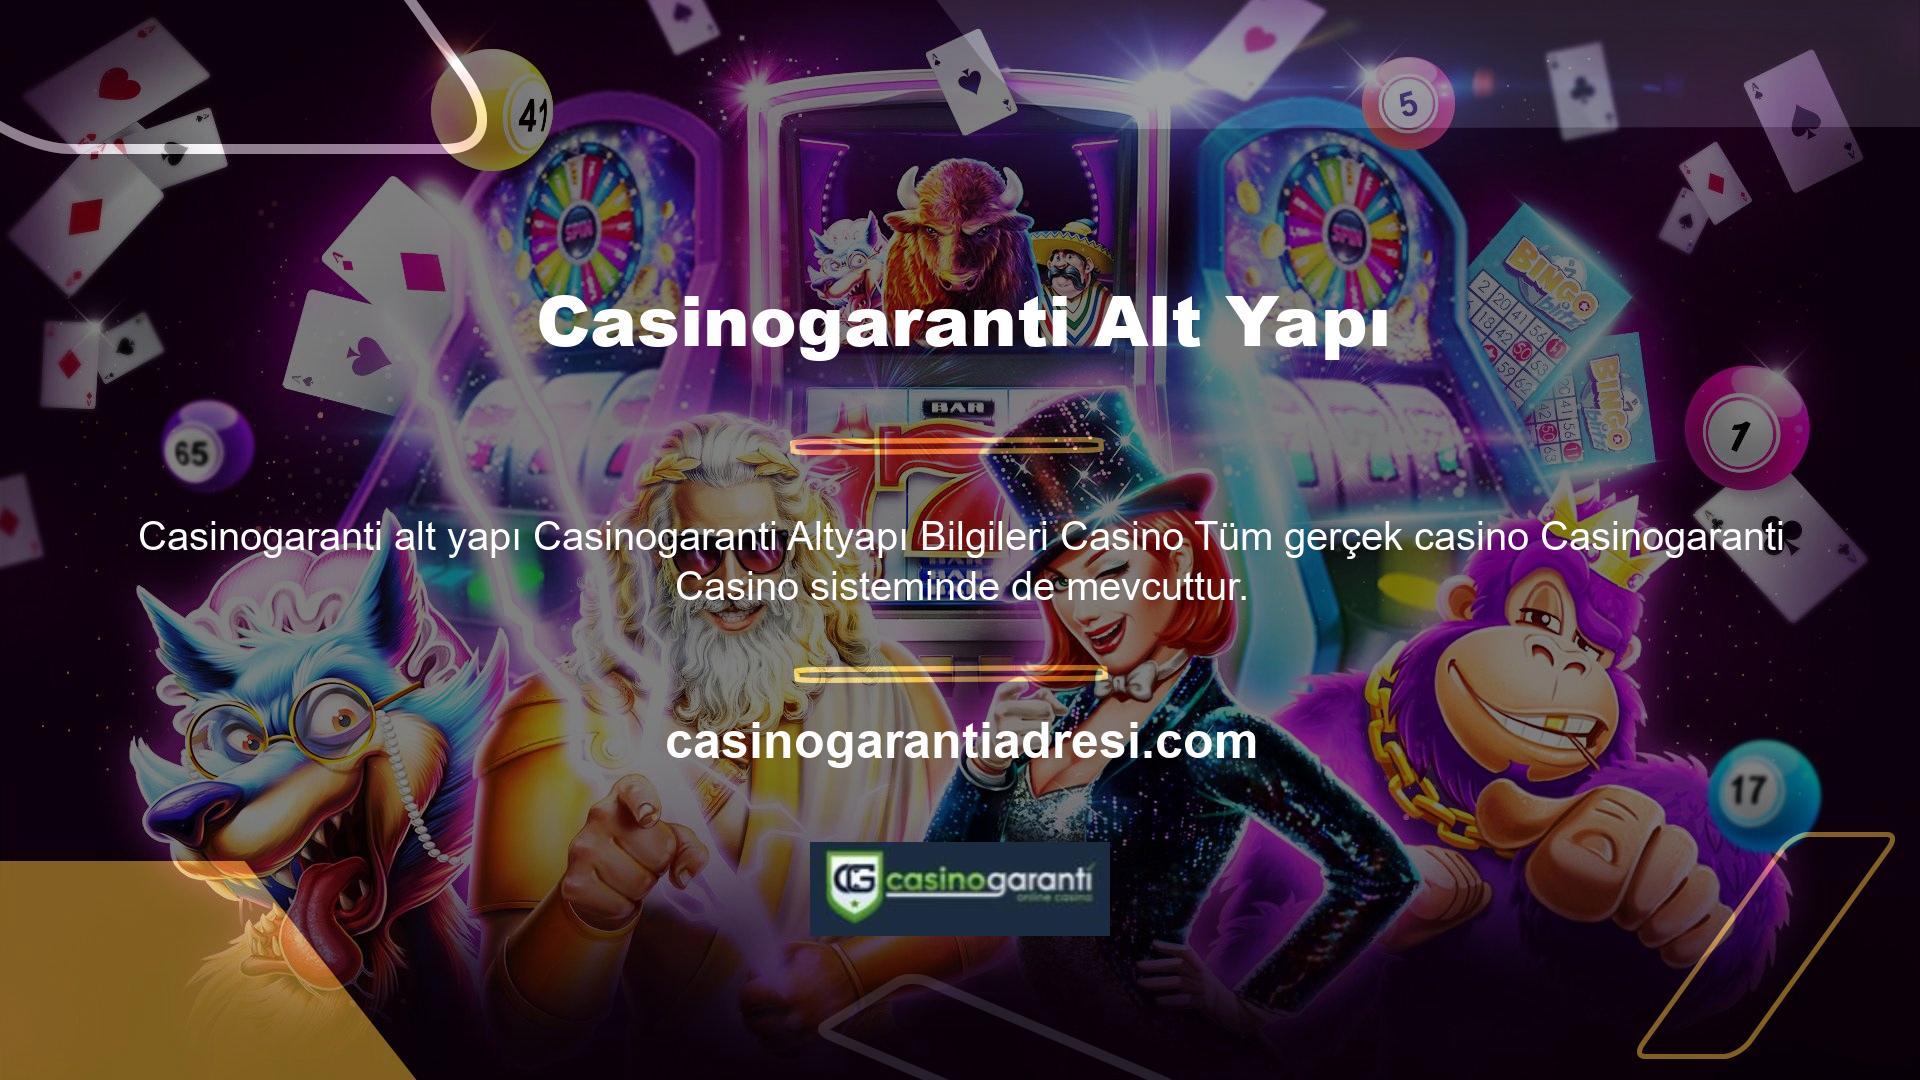 Kullanıcılar ayrıca sistem üzerinden çevrimiçi ve çevrimdışı canlı casino oyunları da oynayabilirler